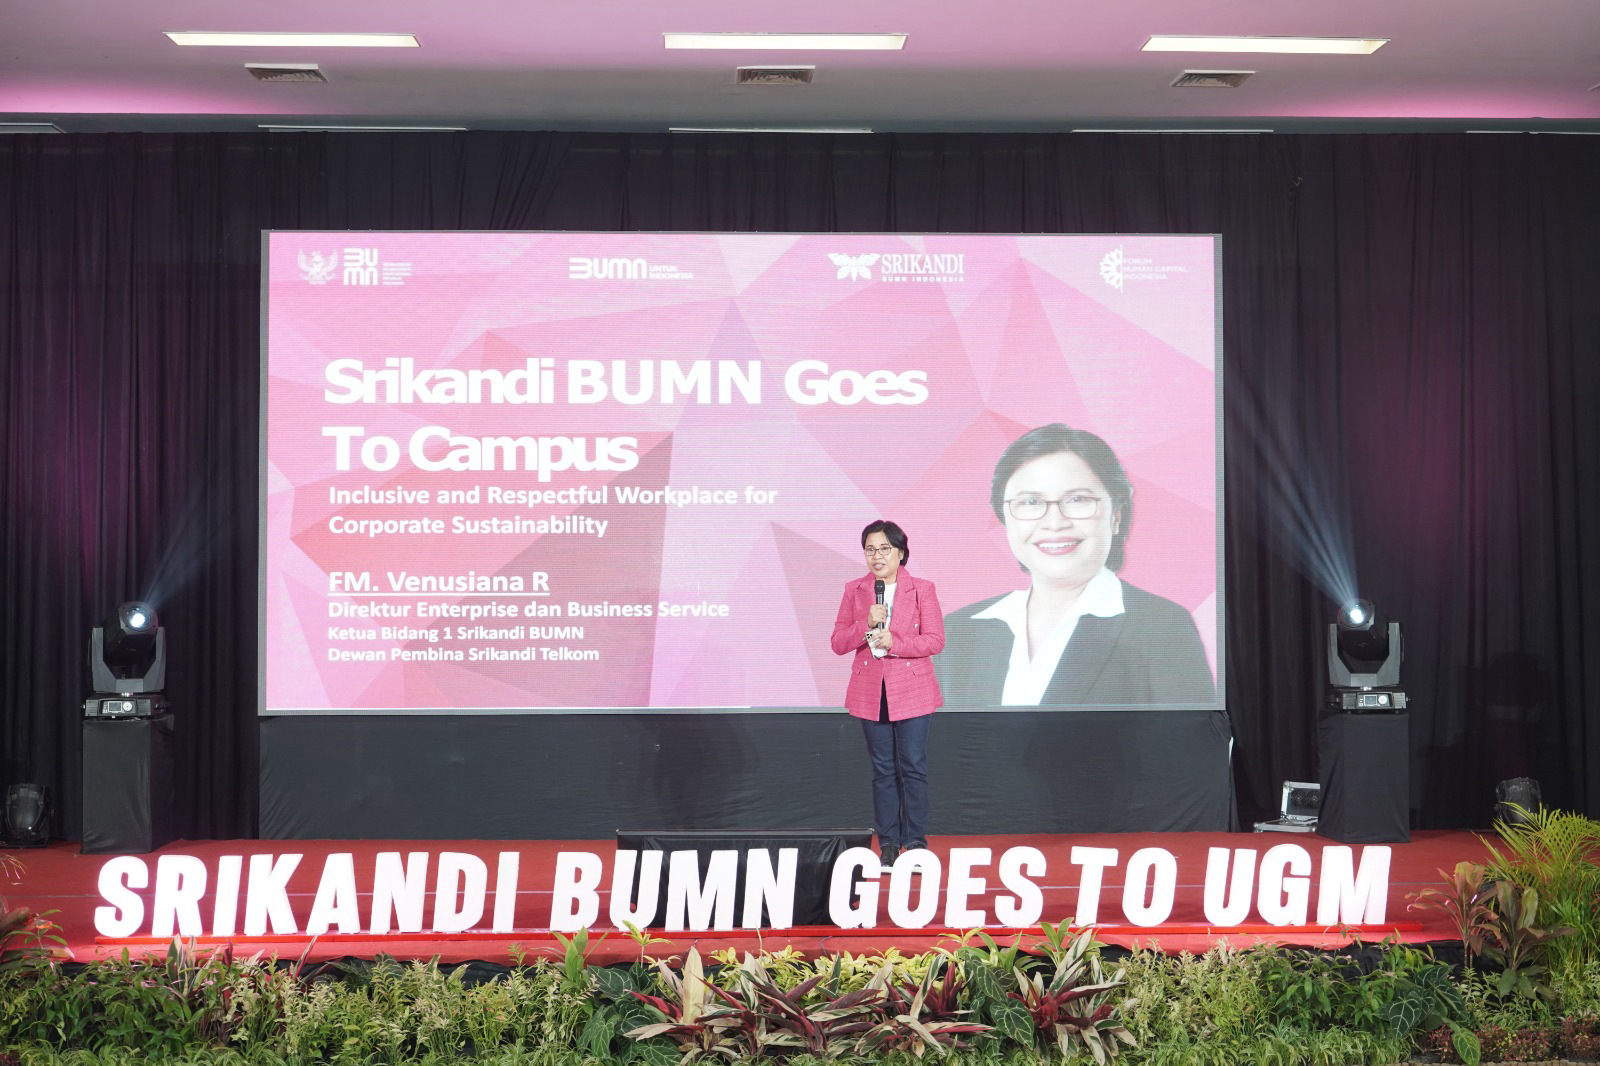 Direktur Enterprise & Business Telkom FM Venusiana R memberikan paparan dalam acara “Srikandi BUMN Goes to UGM” yang diselenggarakan oleh Srikandi BUMN bersama UGM di Yogyakarta, Rabu (16/8).